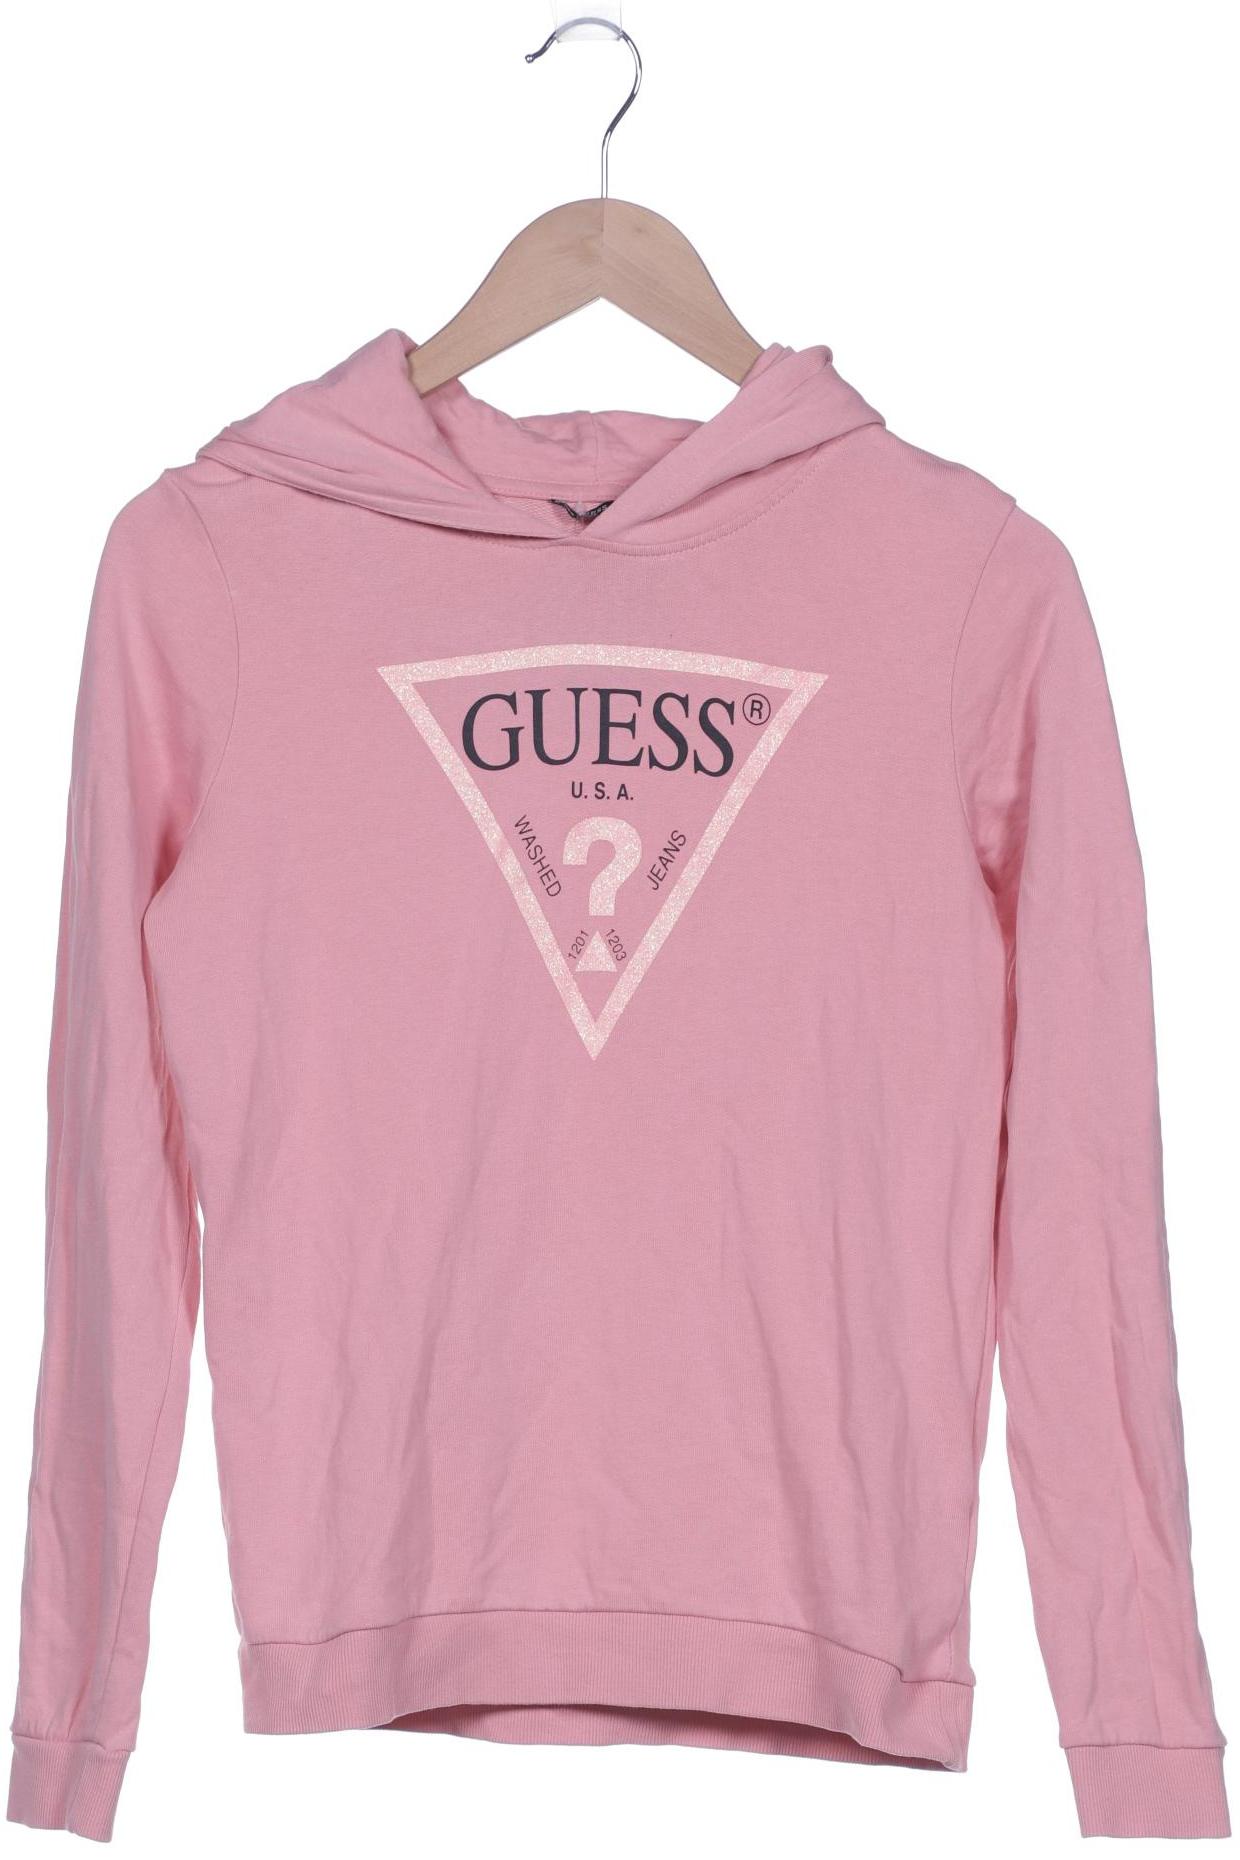 GUESS Damen Kapuzenpullover, pink von Guess